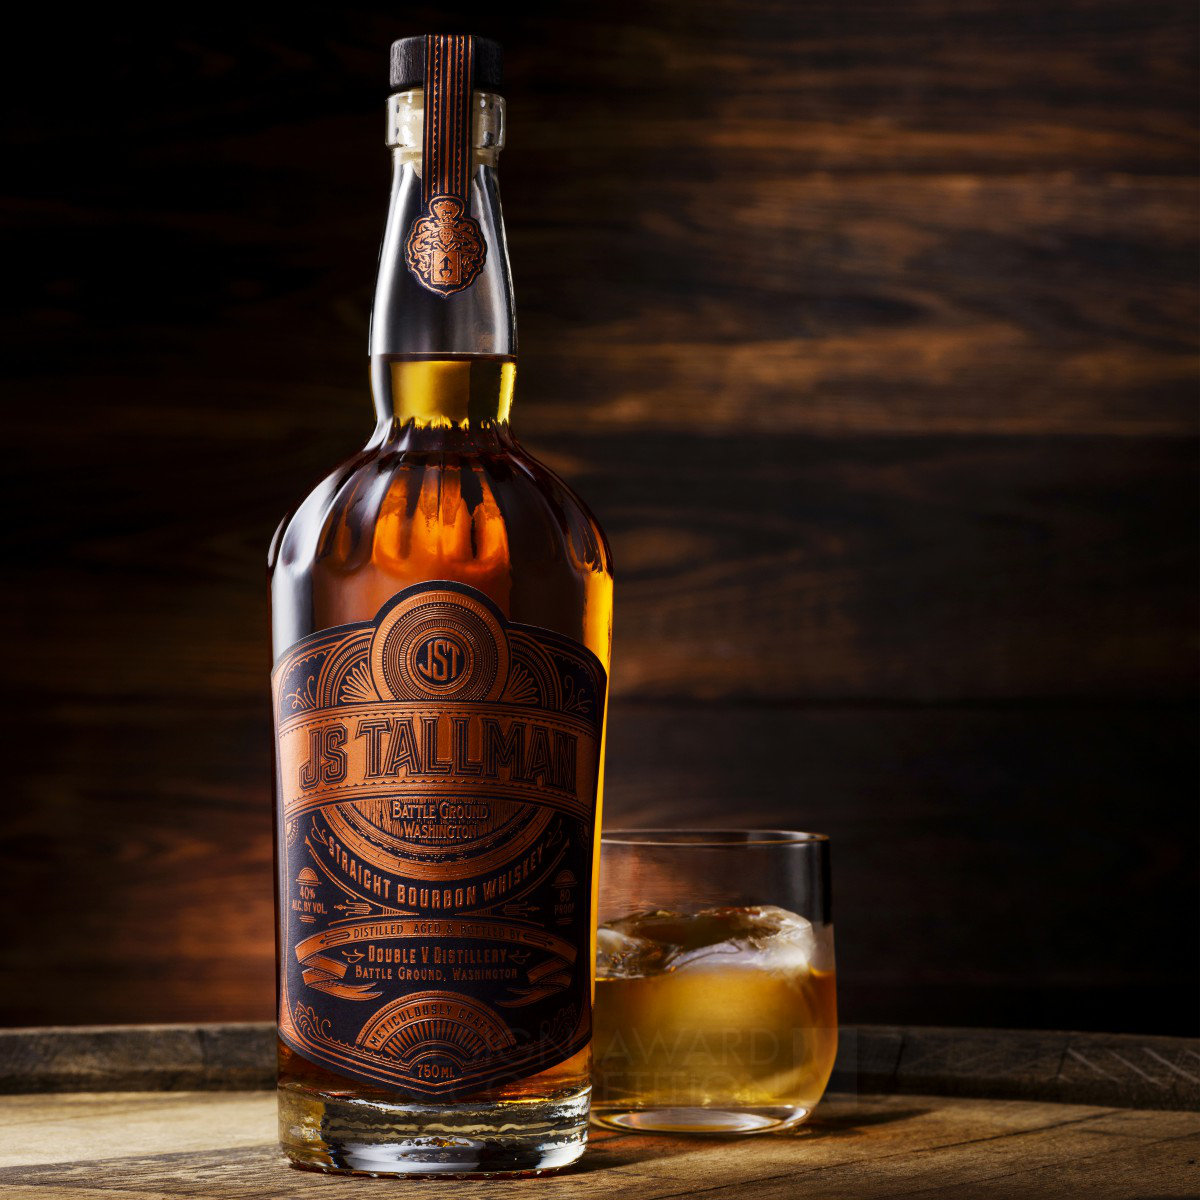 JS Tallman Bourbon Packaging by Kristin Casaletto